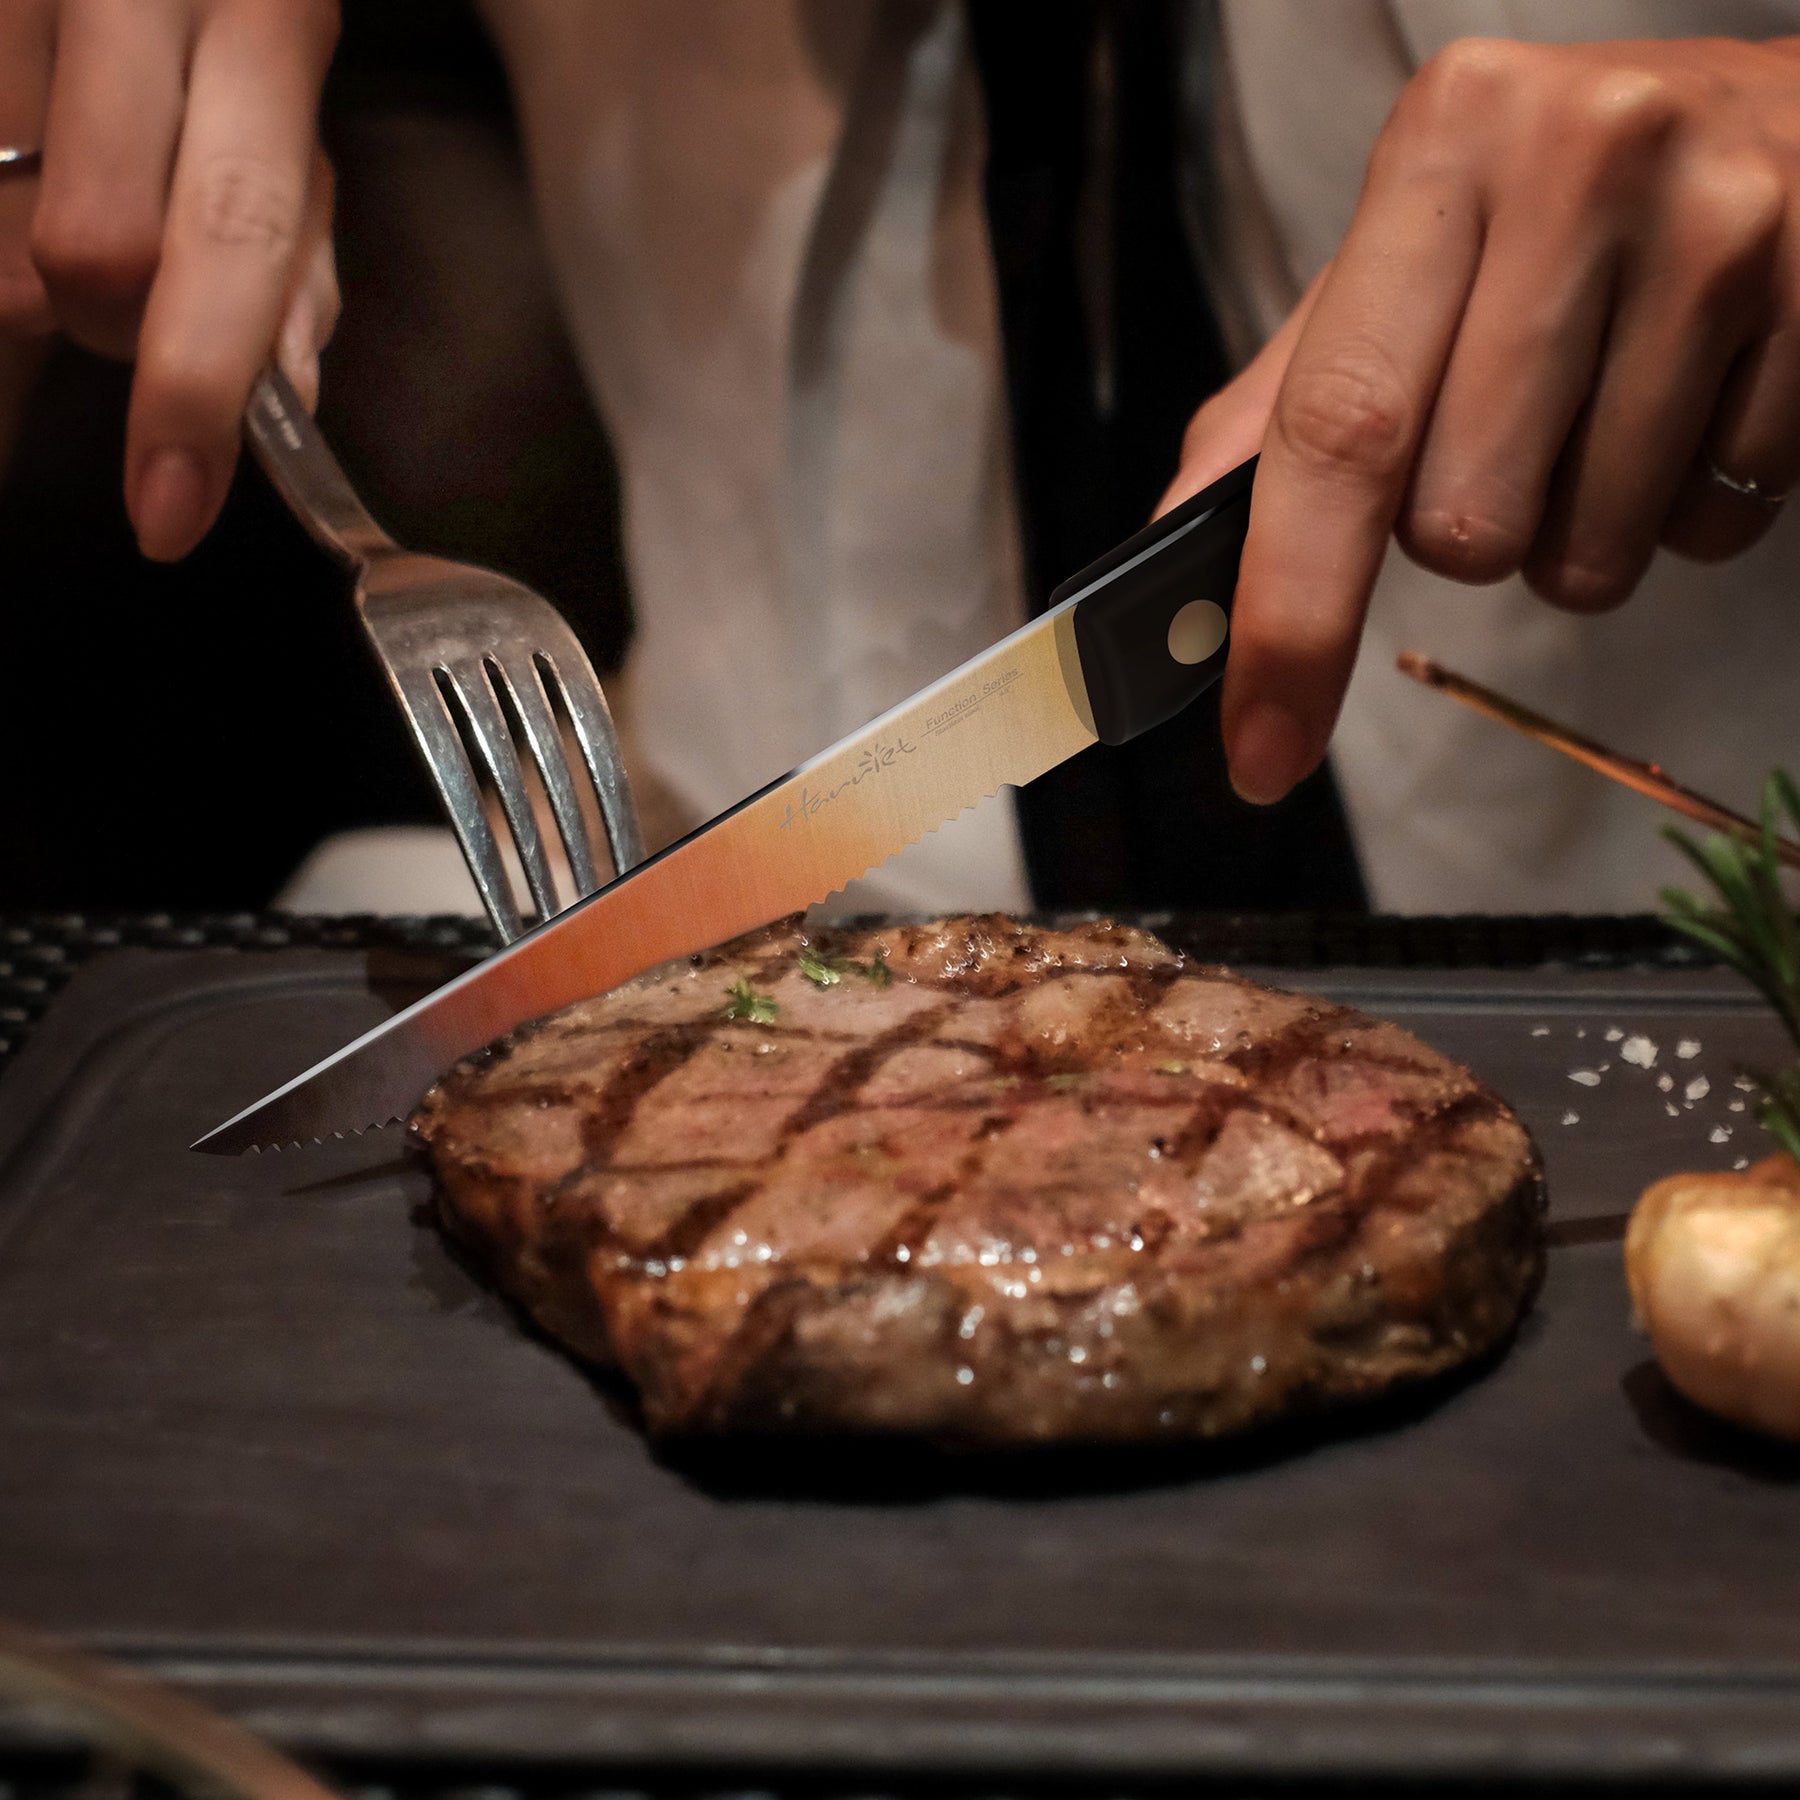 harriet Steak Knife Set, Serrated Steak Knives Set of 6, Full Tang German  Stainless Steel Steak Knives, Black